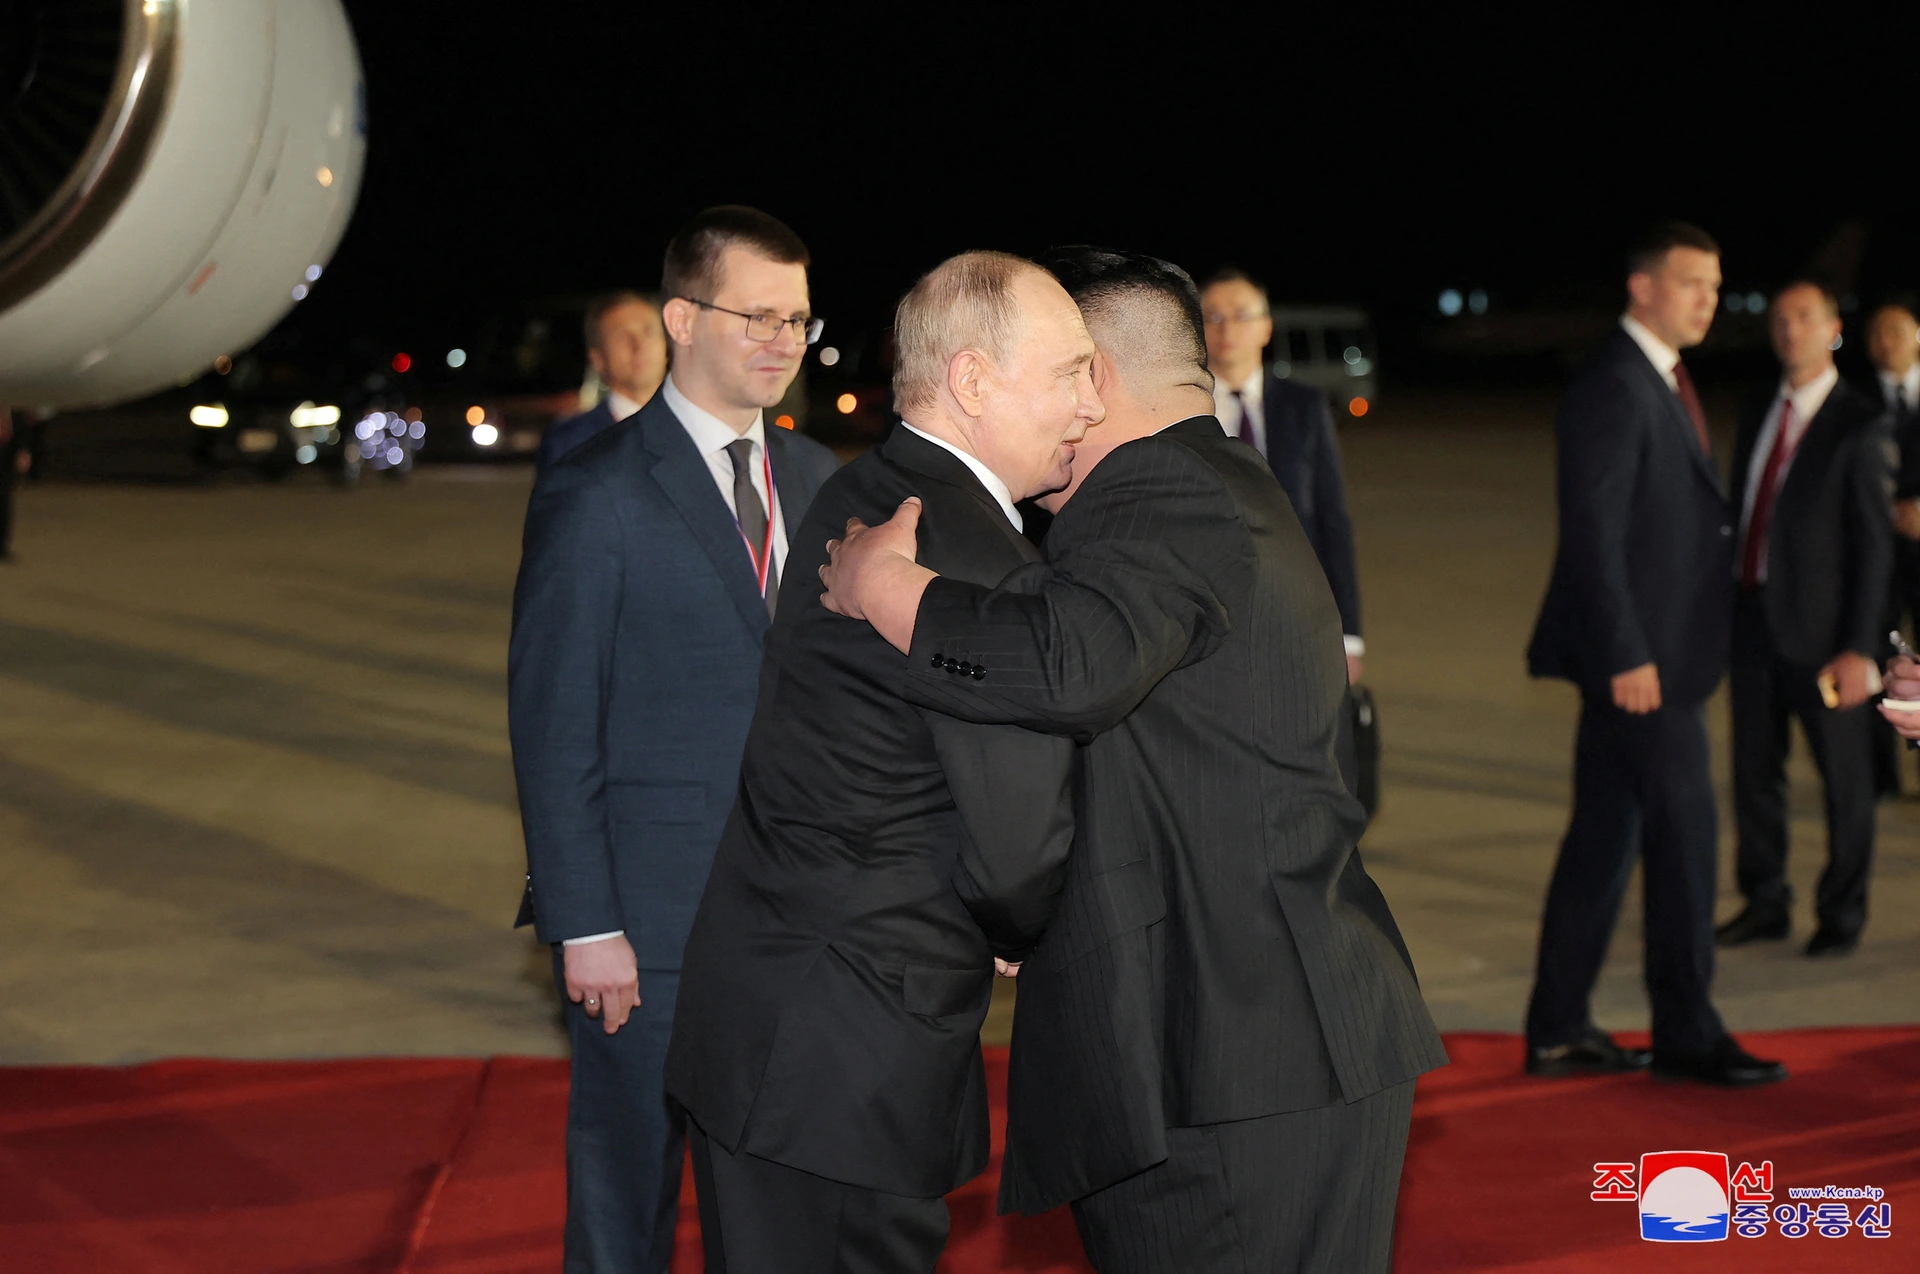 Lễ đón tiếp trọng thể Tổng thống Putin tại Triều Tiên